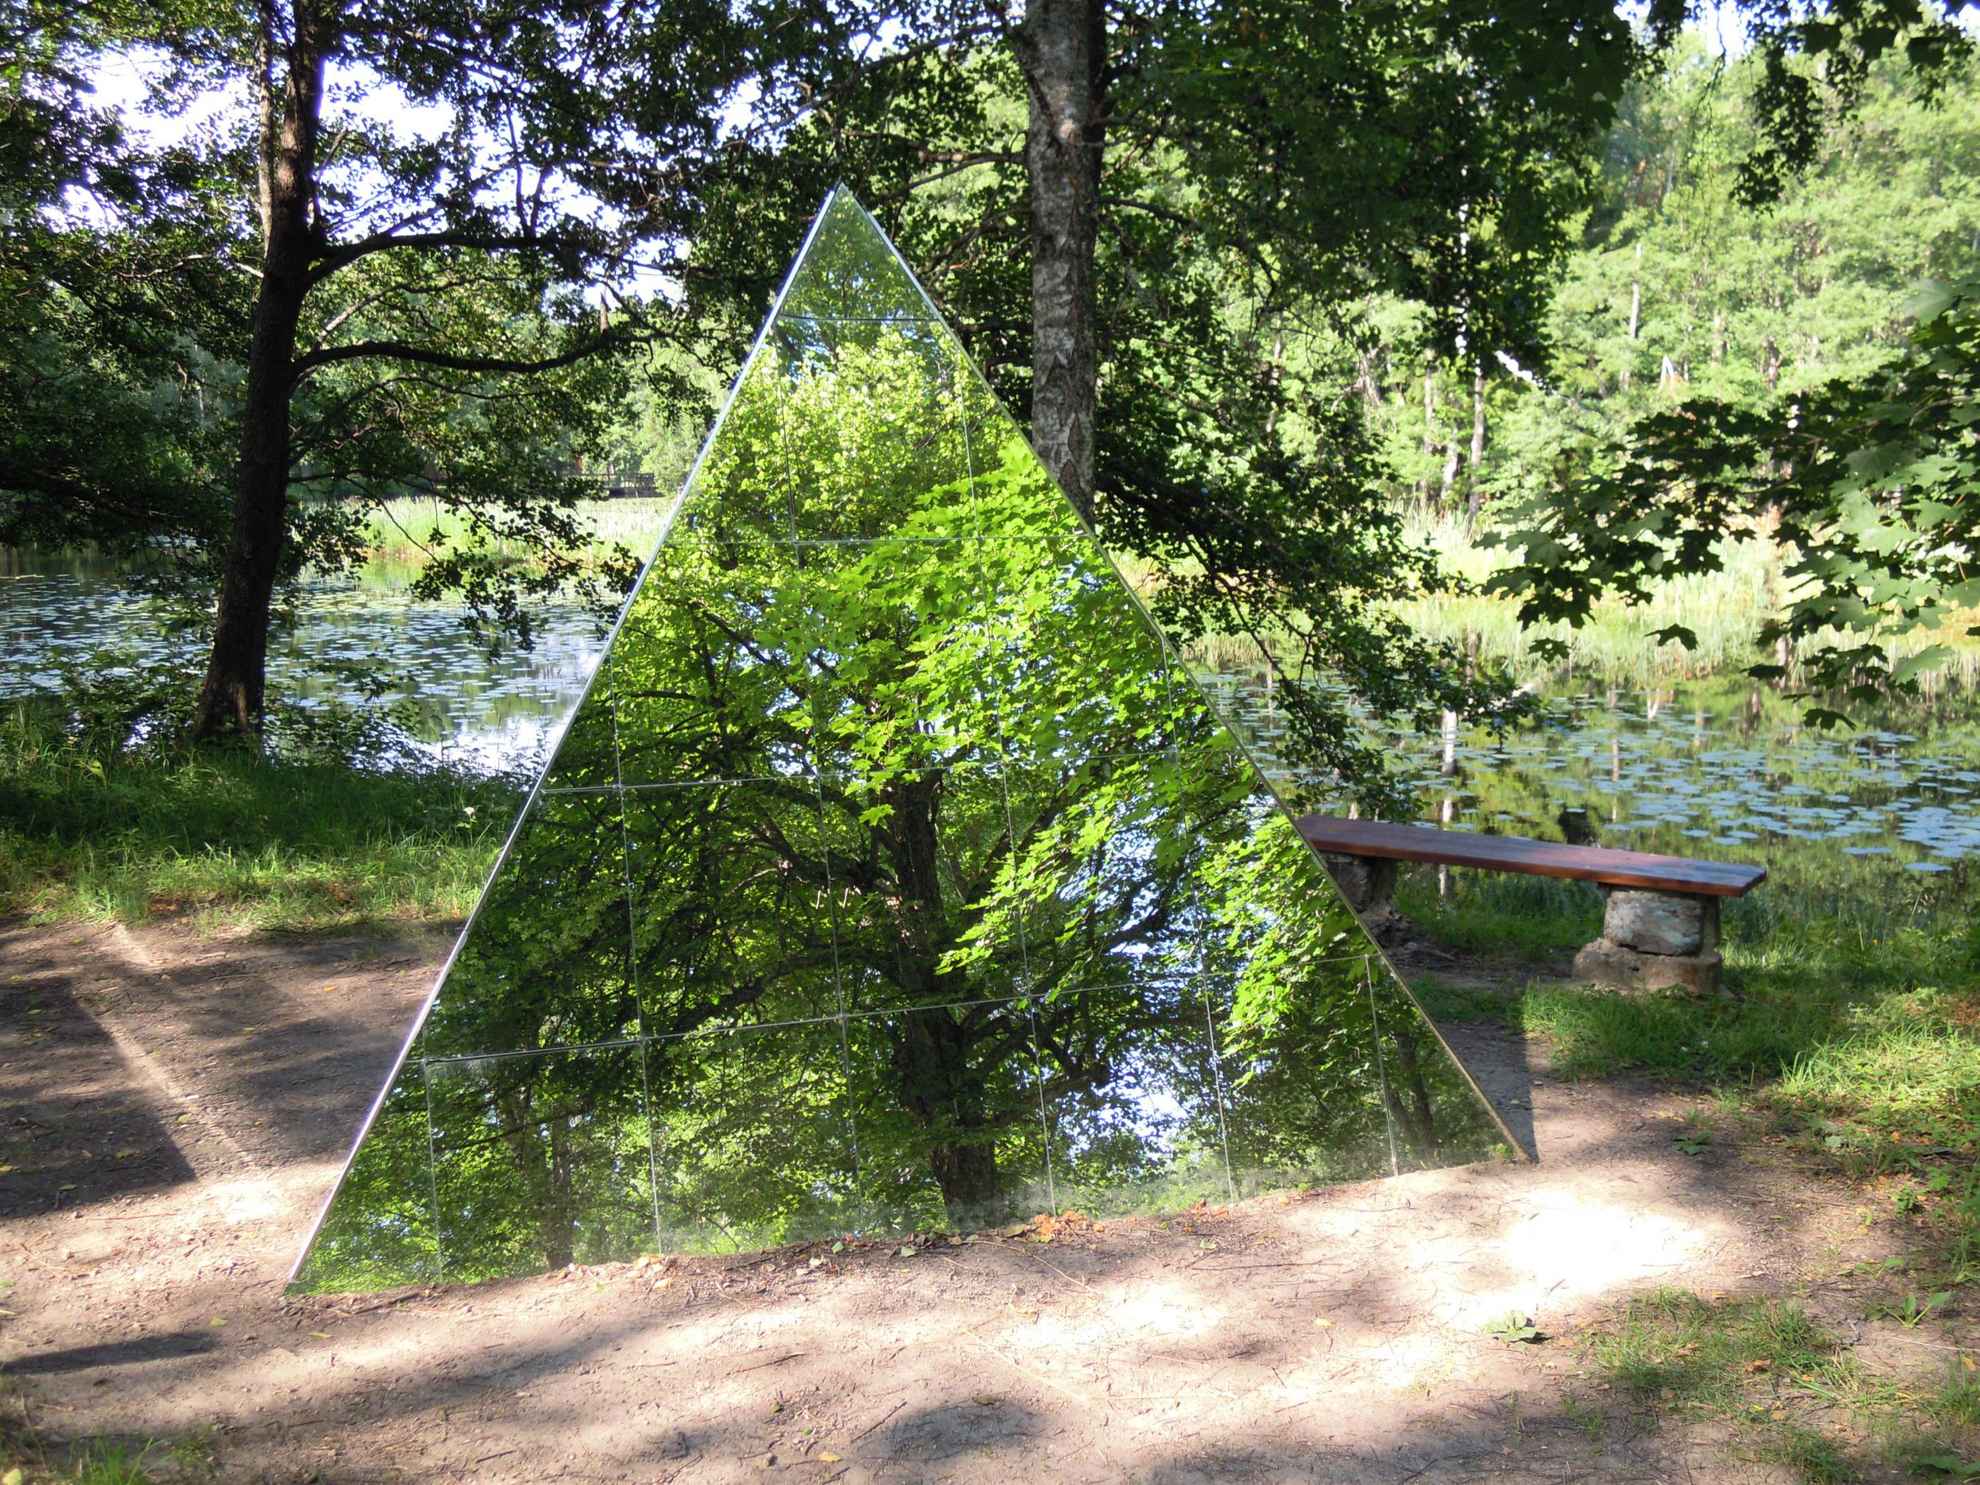 Art work at Skulpturparken Ängelsberg